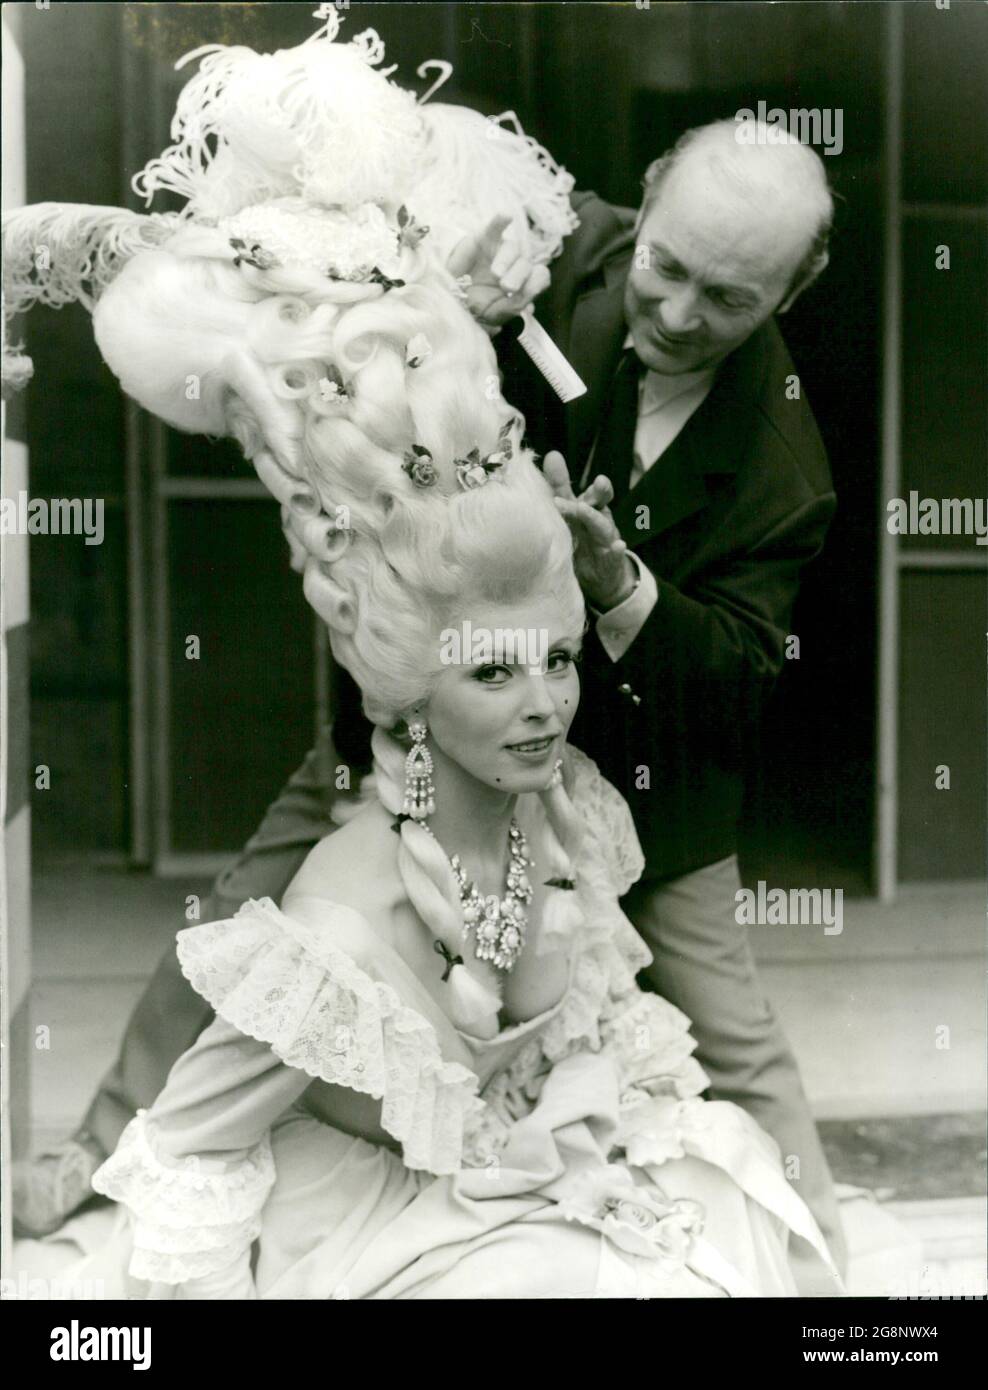 Unter Assistenz von Maskenbildner Heinz Fuhrmann zeigt Suntka Haneburger kunstvoll angefertigte Rokoko-Perücken. Stock Photo